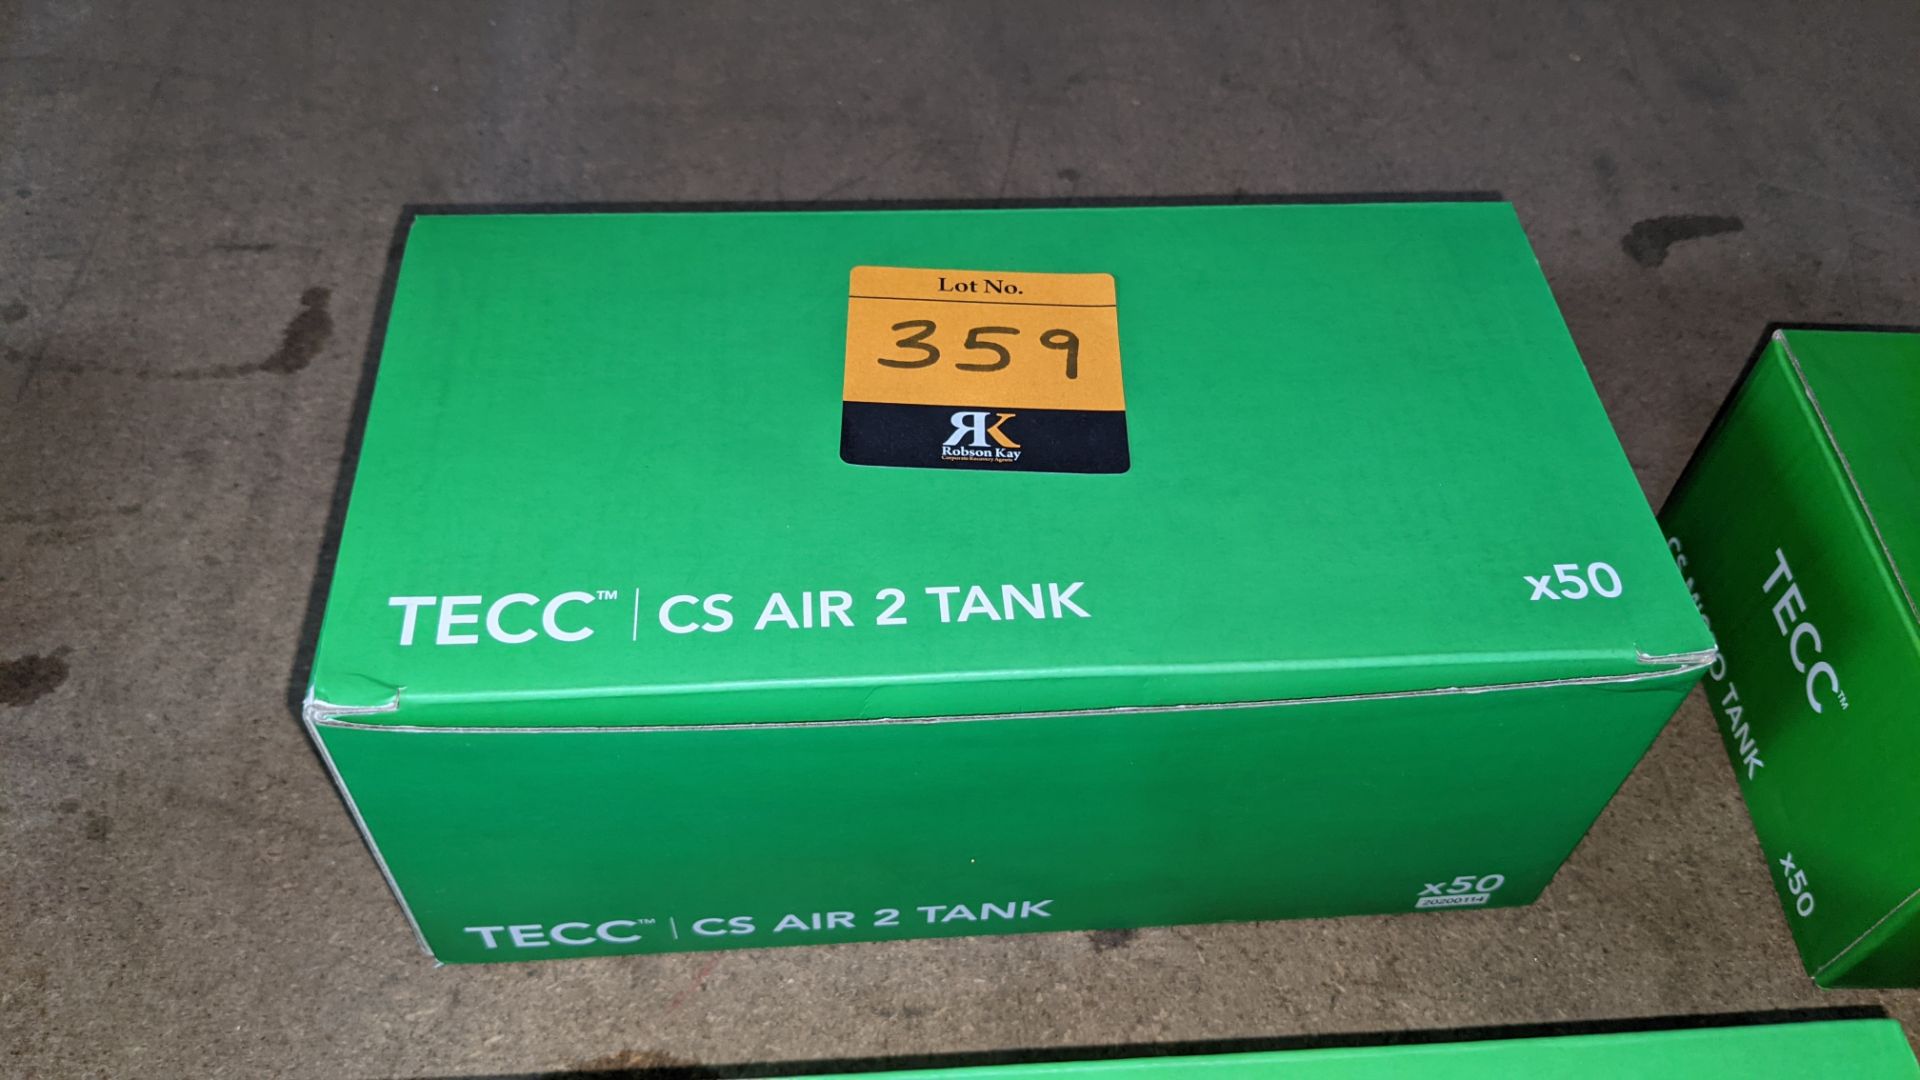 50 off TECC CS Air 2 Tanks - Image 2 of 3